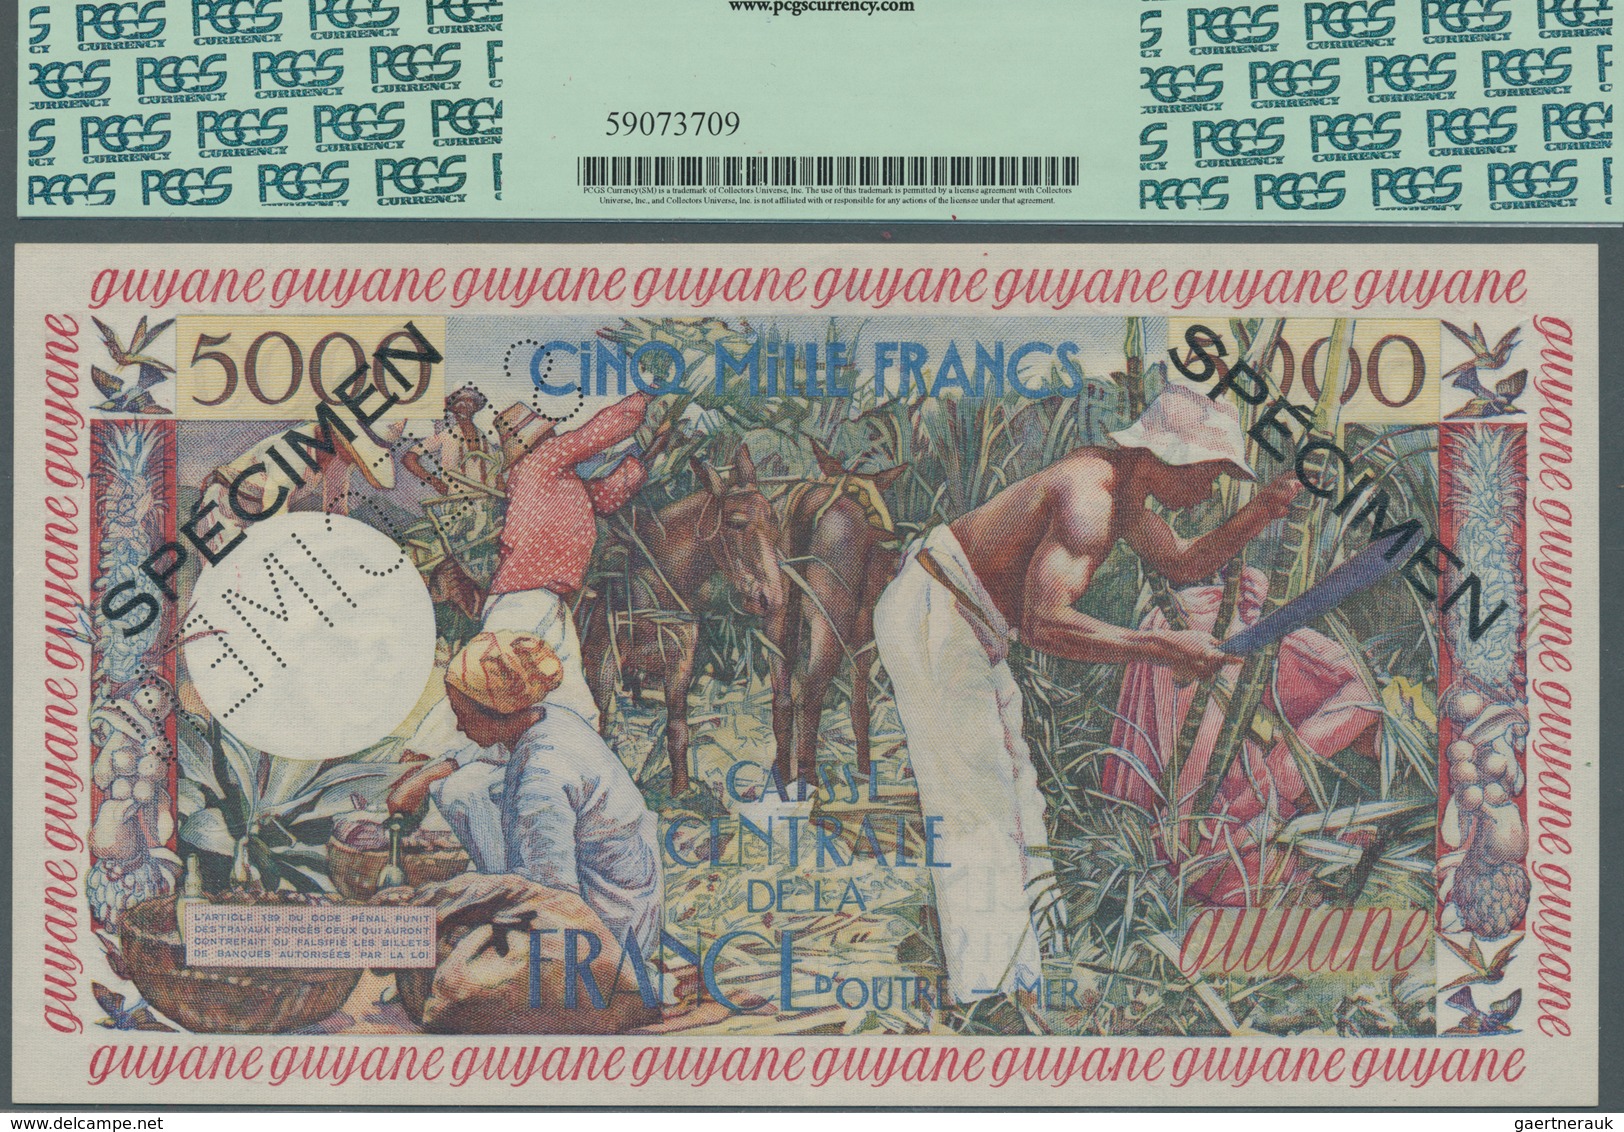 French Guiana / Französisch-Guayana: Caisse Centrale De La France D'Outre-Mer 5000 Francs ND(1960) S - Guyana Francesa